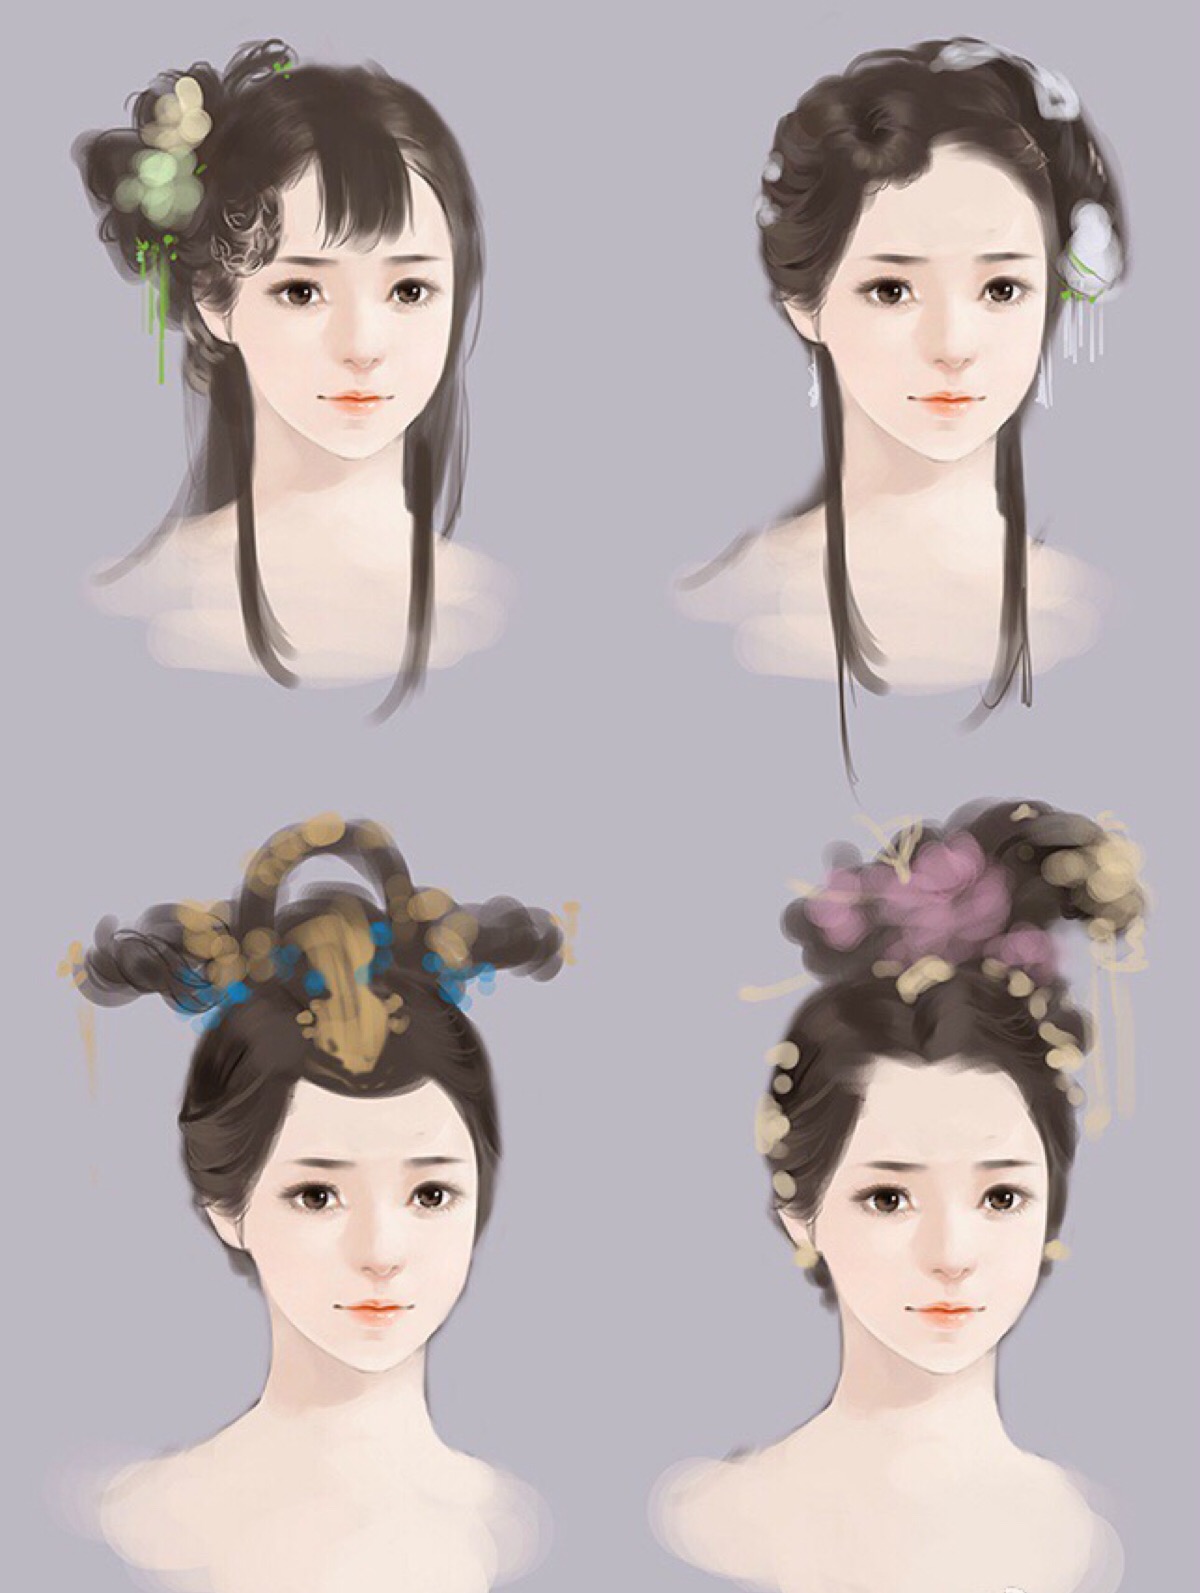 插梳盘发图解法,绾青丝——中国古代女子发型 - 贵州图库